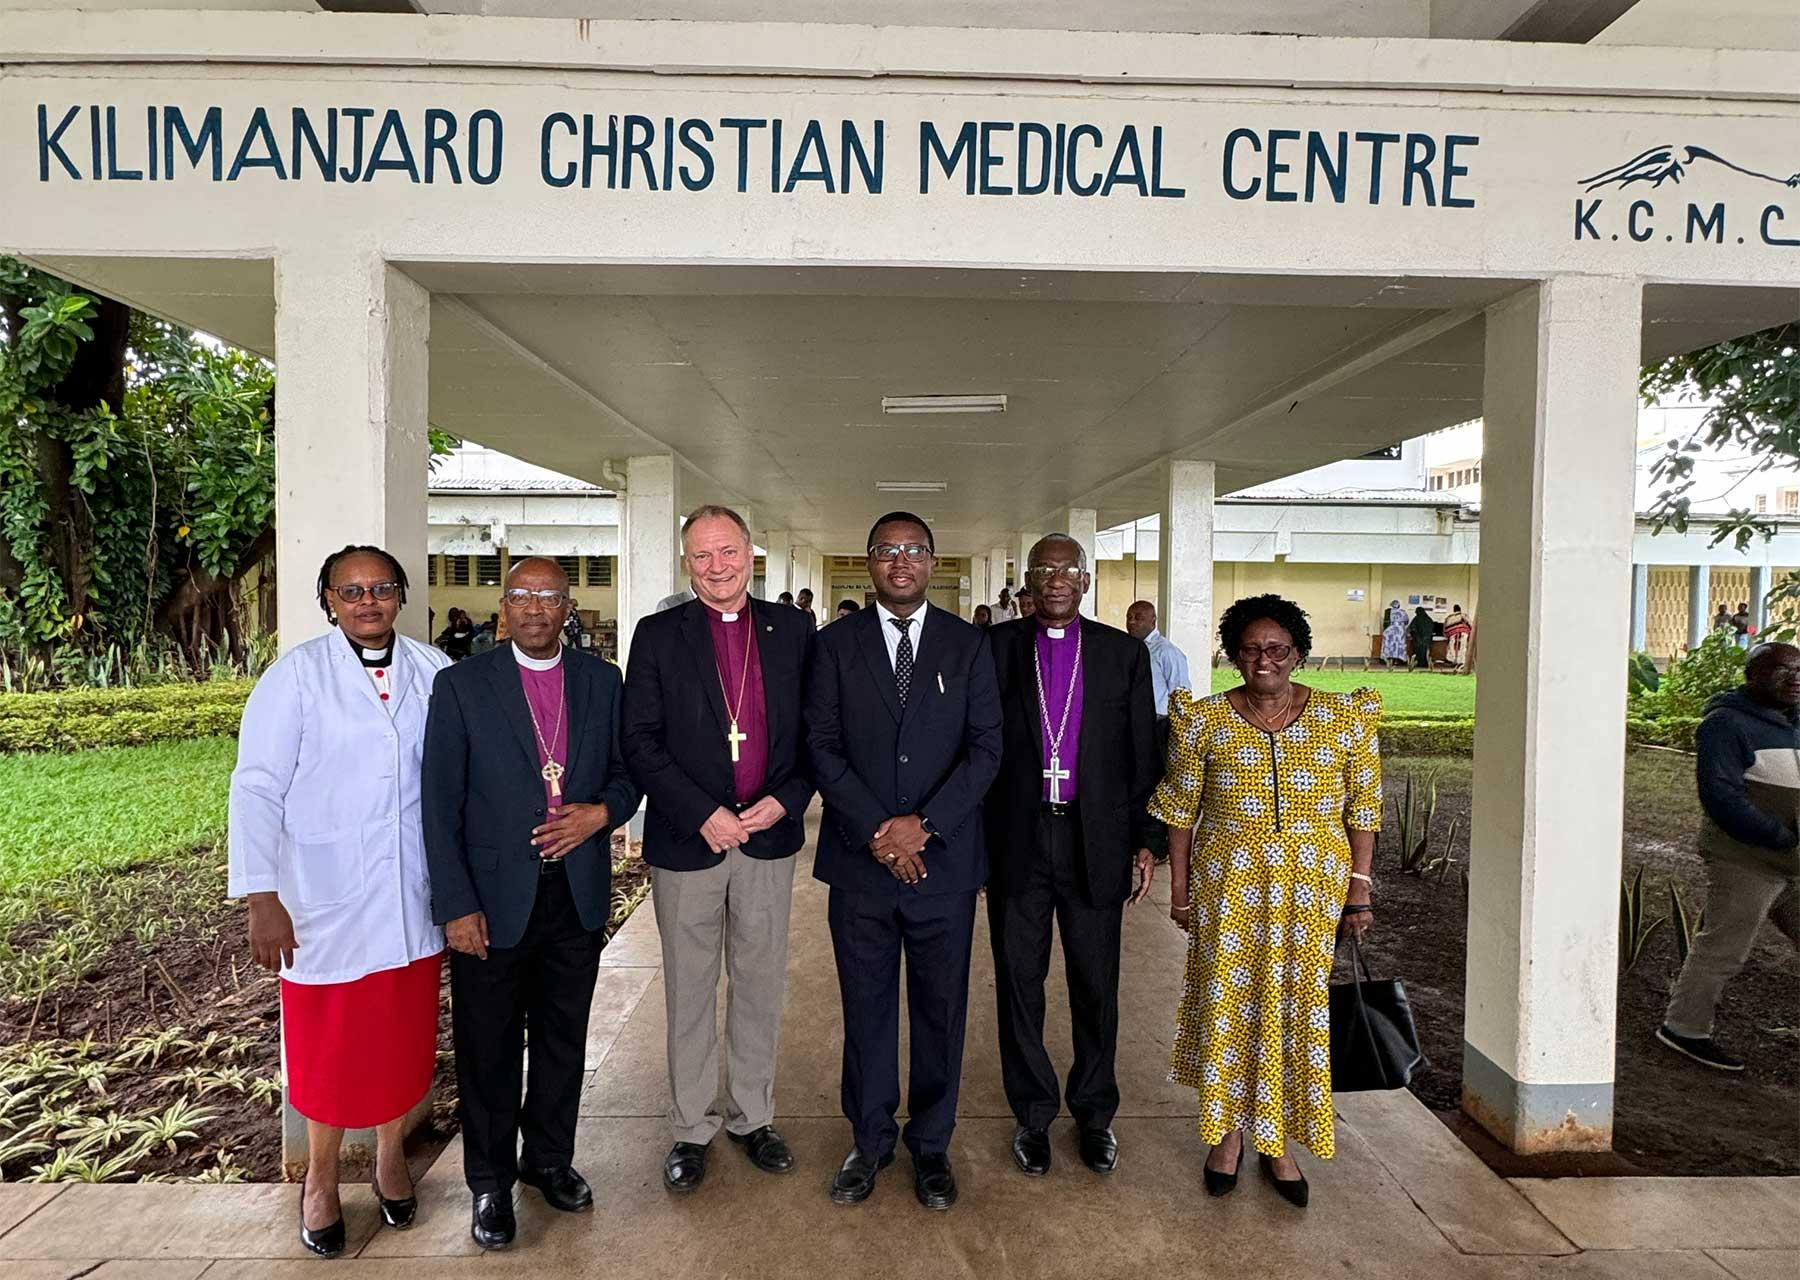 Das Kilimanjaro Christian Medical Centre ist Teil eines Netzwerks von 24 Krankenhäusern und 148 Gesundheitseinrichtungen, die von der ELKT betrieben werden